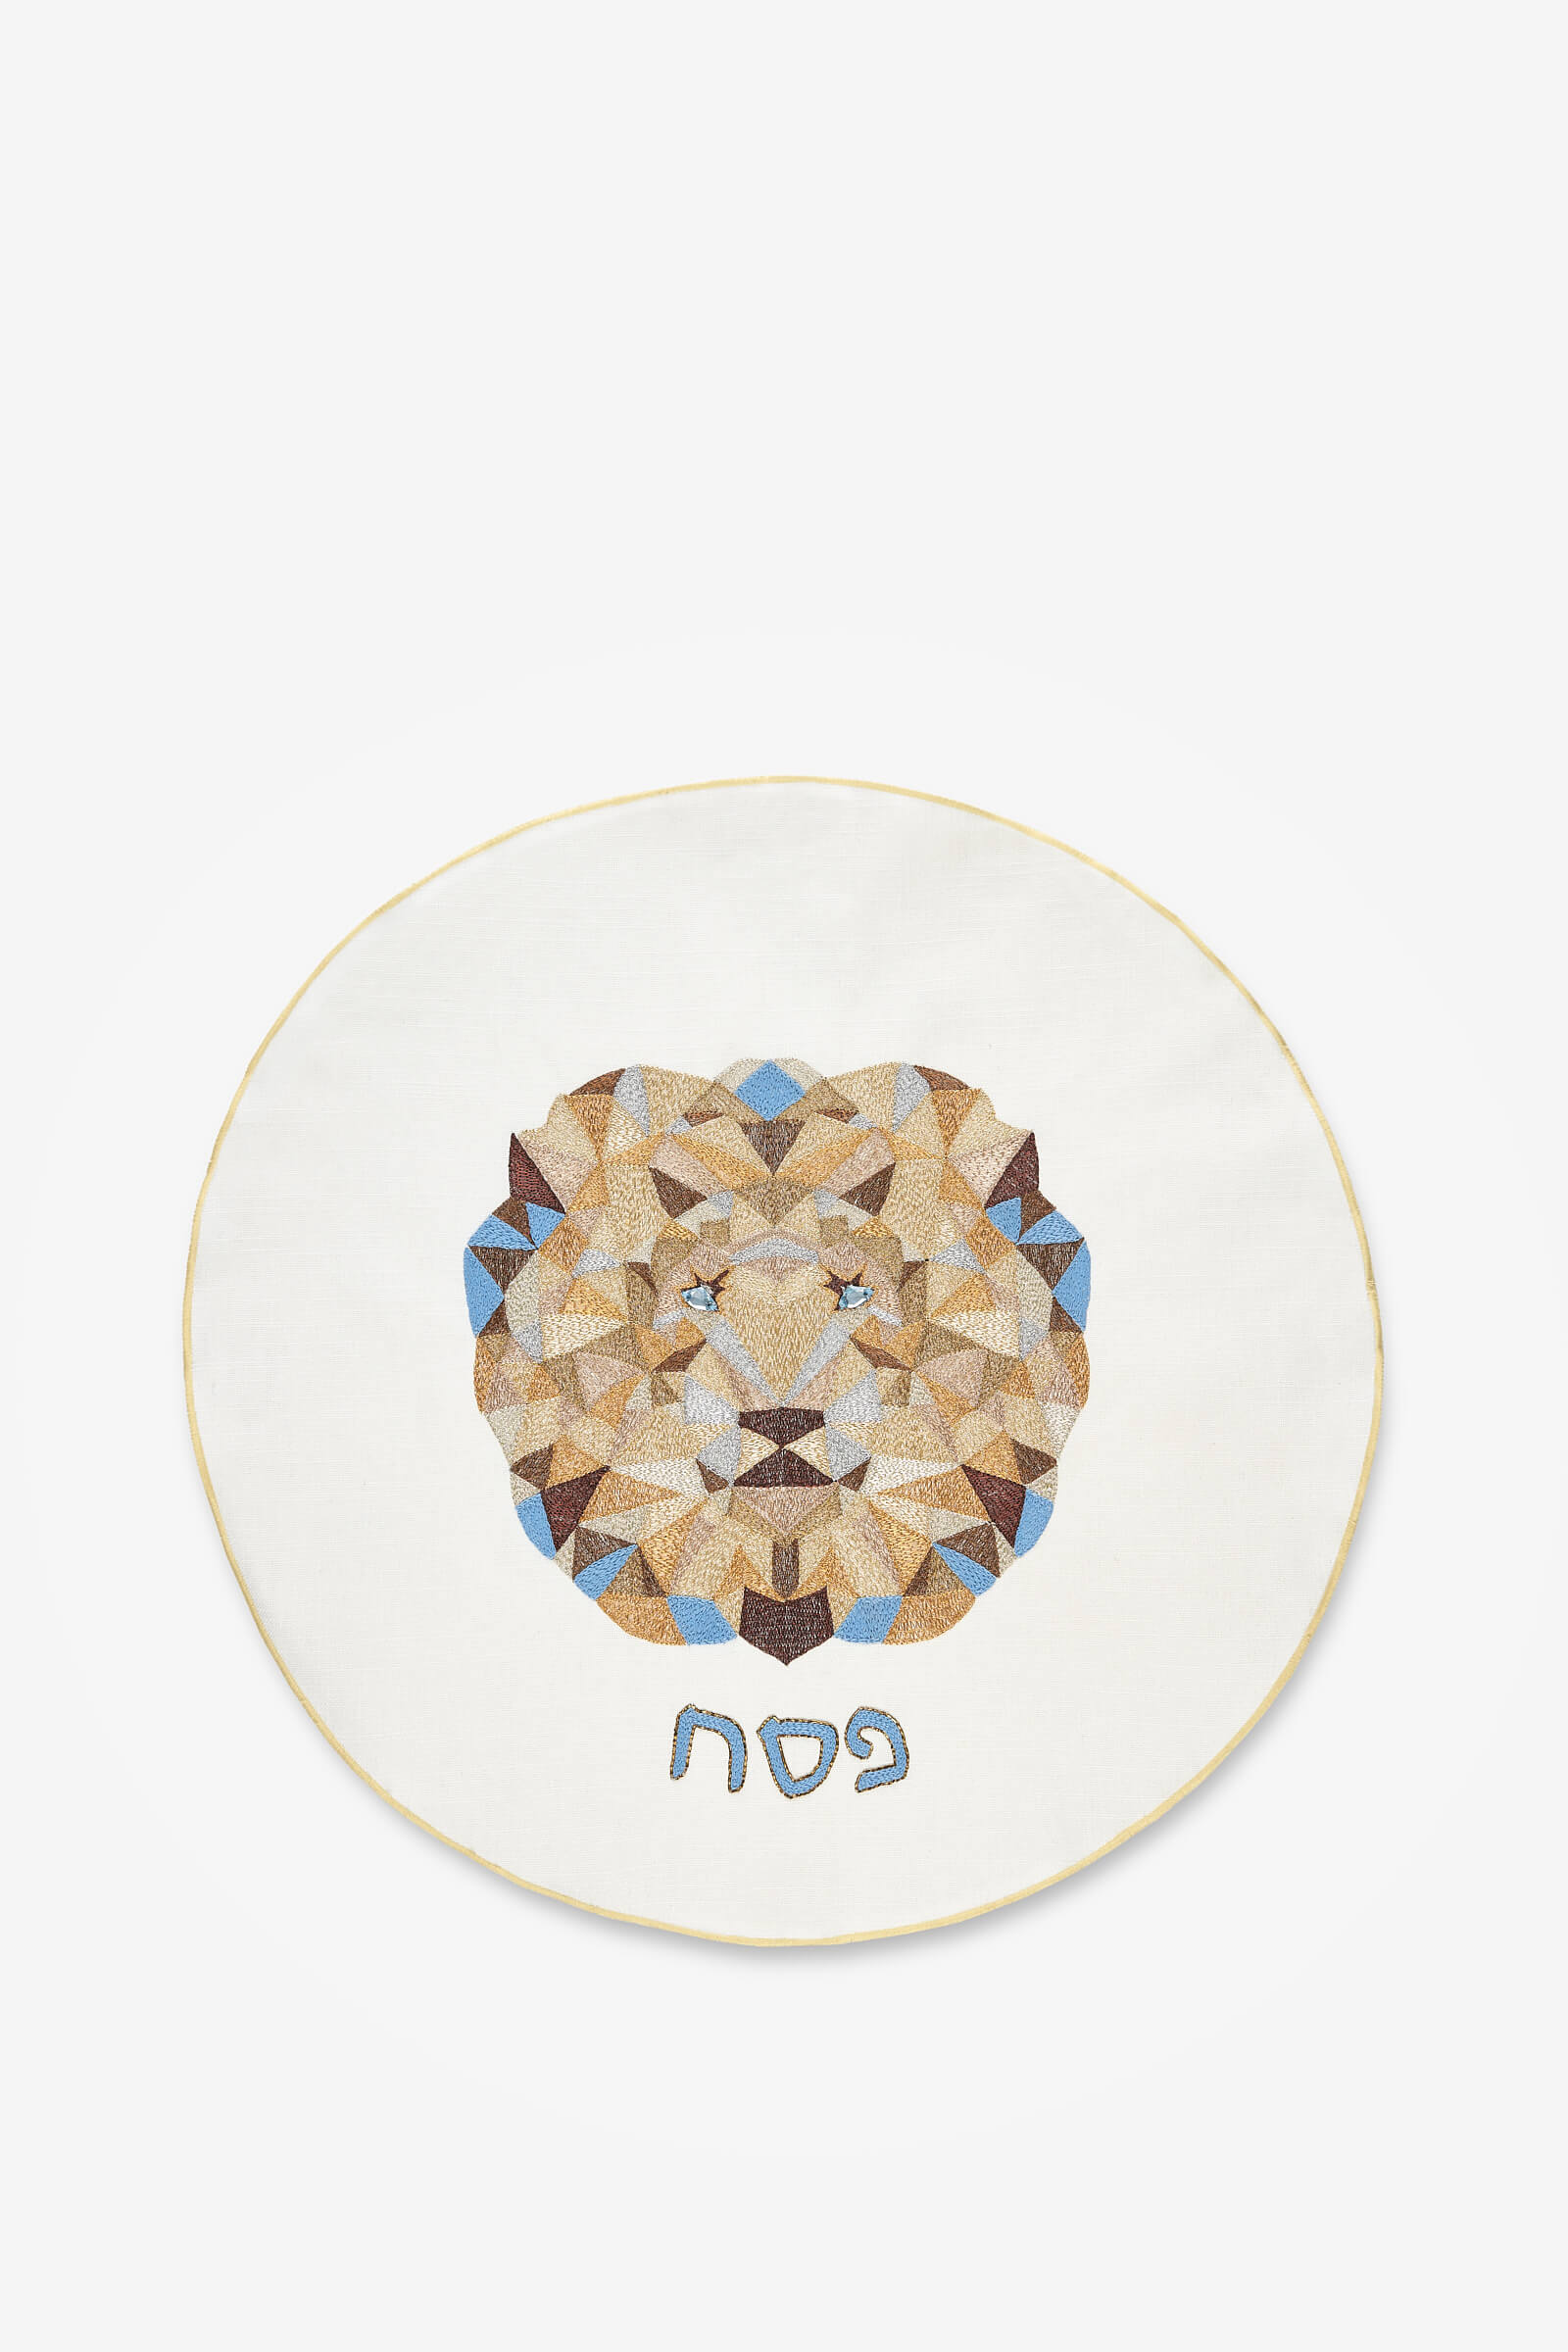 Judah Matzah Cover, Lion